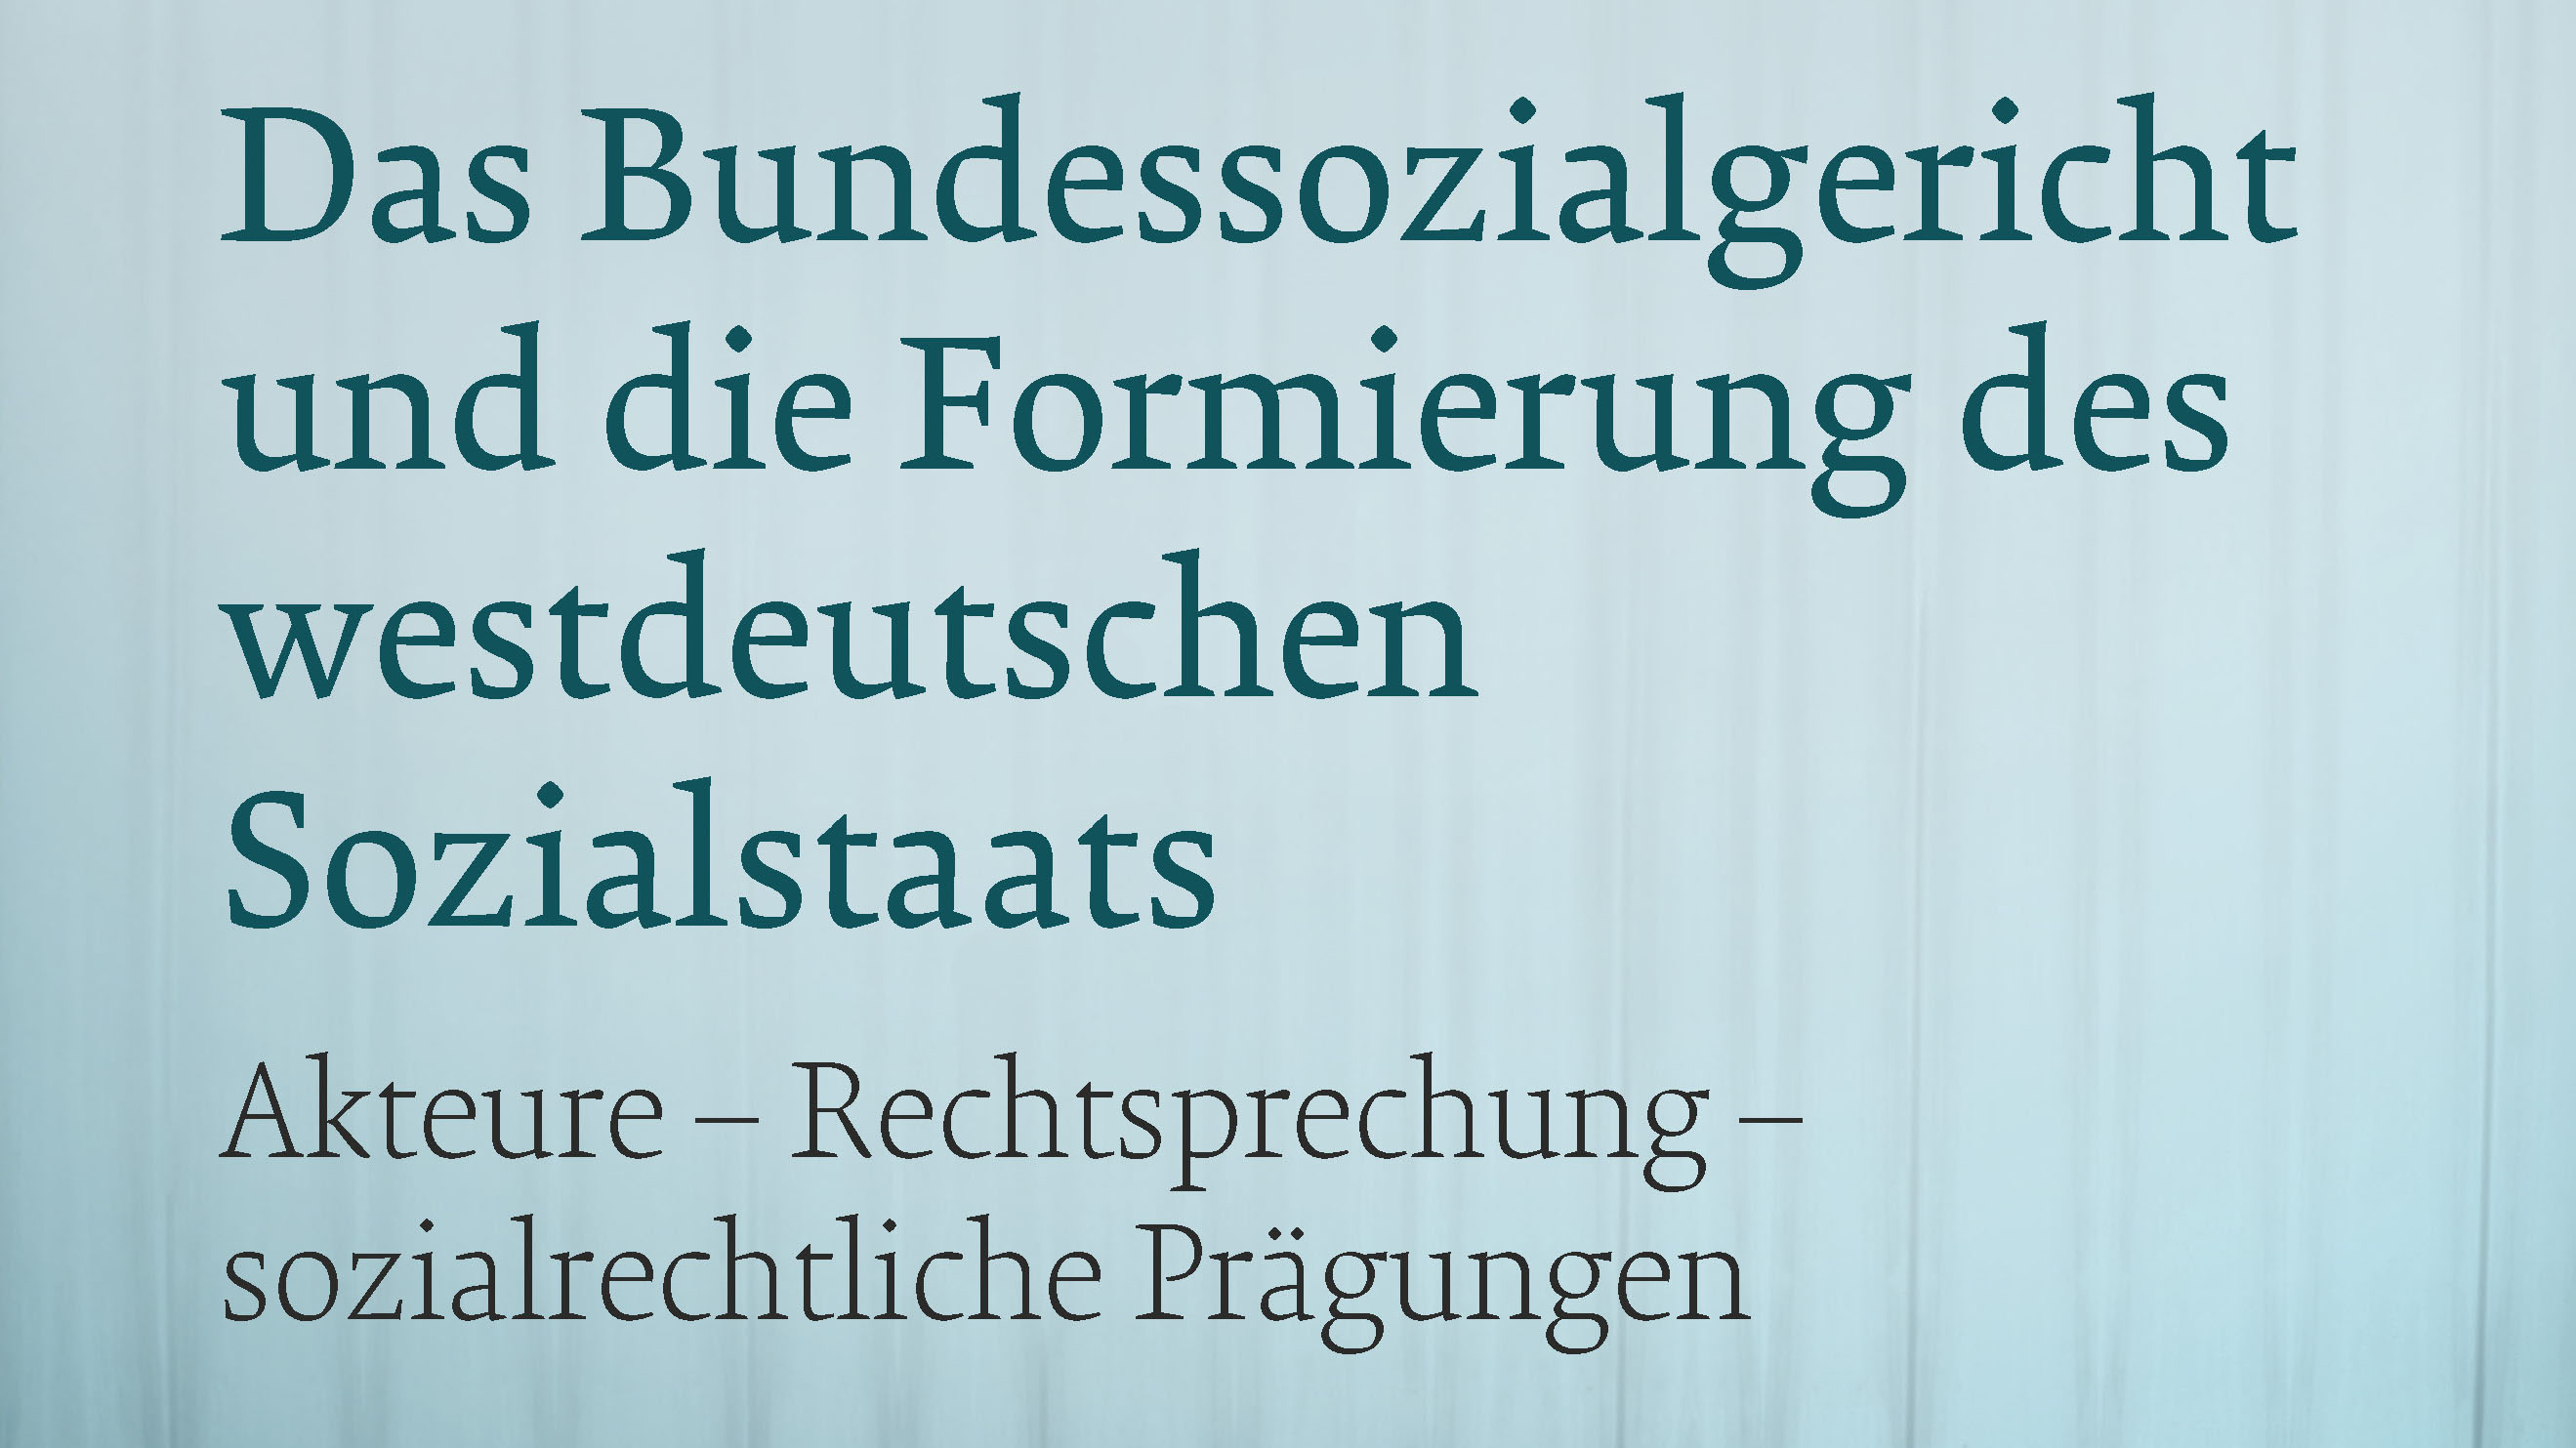 Ausschnitt aus dem Cover des Buches zum Forschungsprojekt "Das Bundessozialgericht und die Formierung des westdeutschen Sozialstaats"